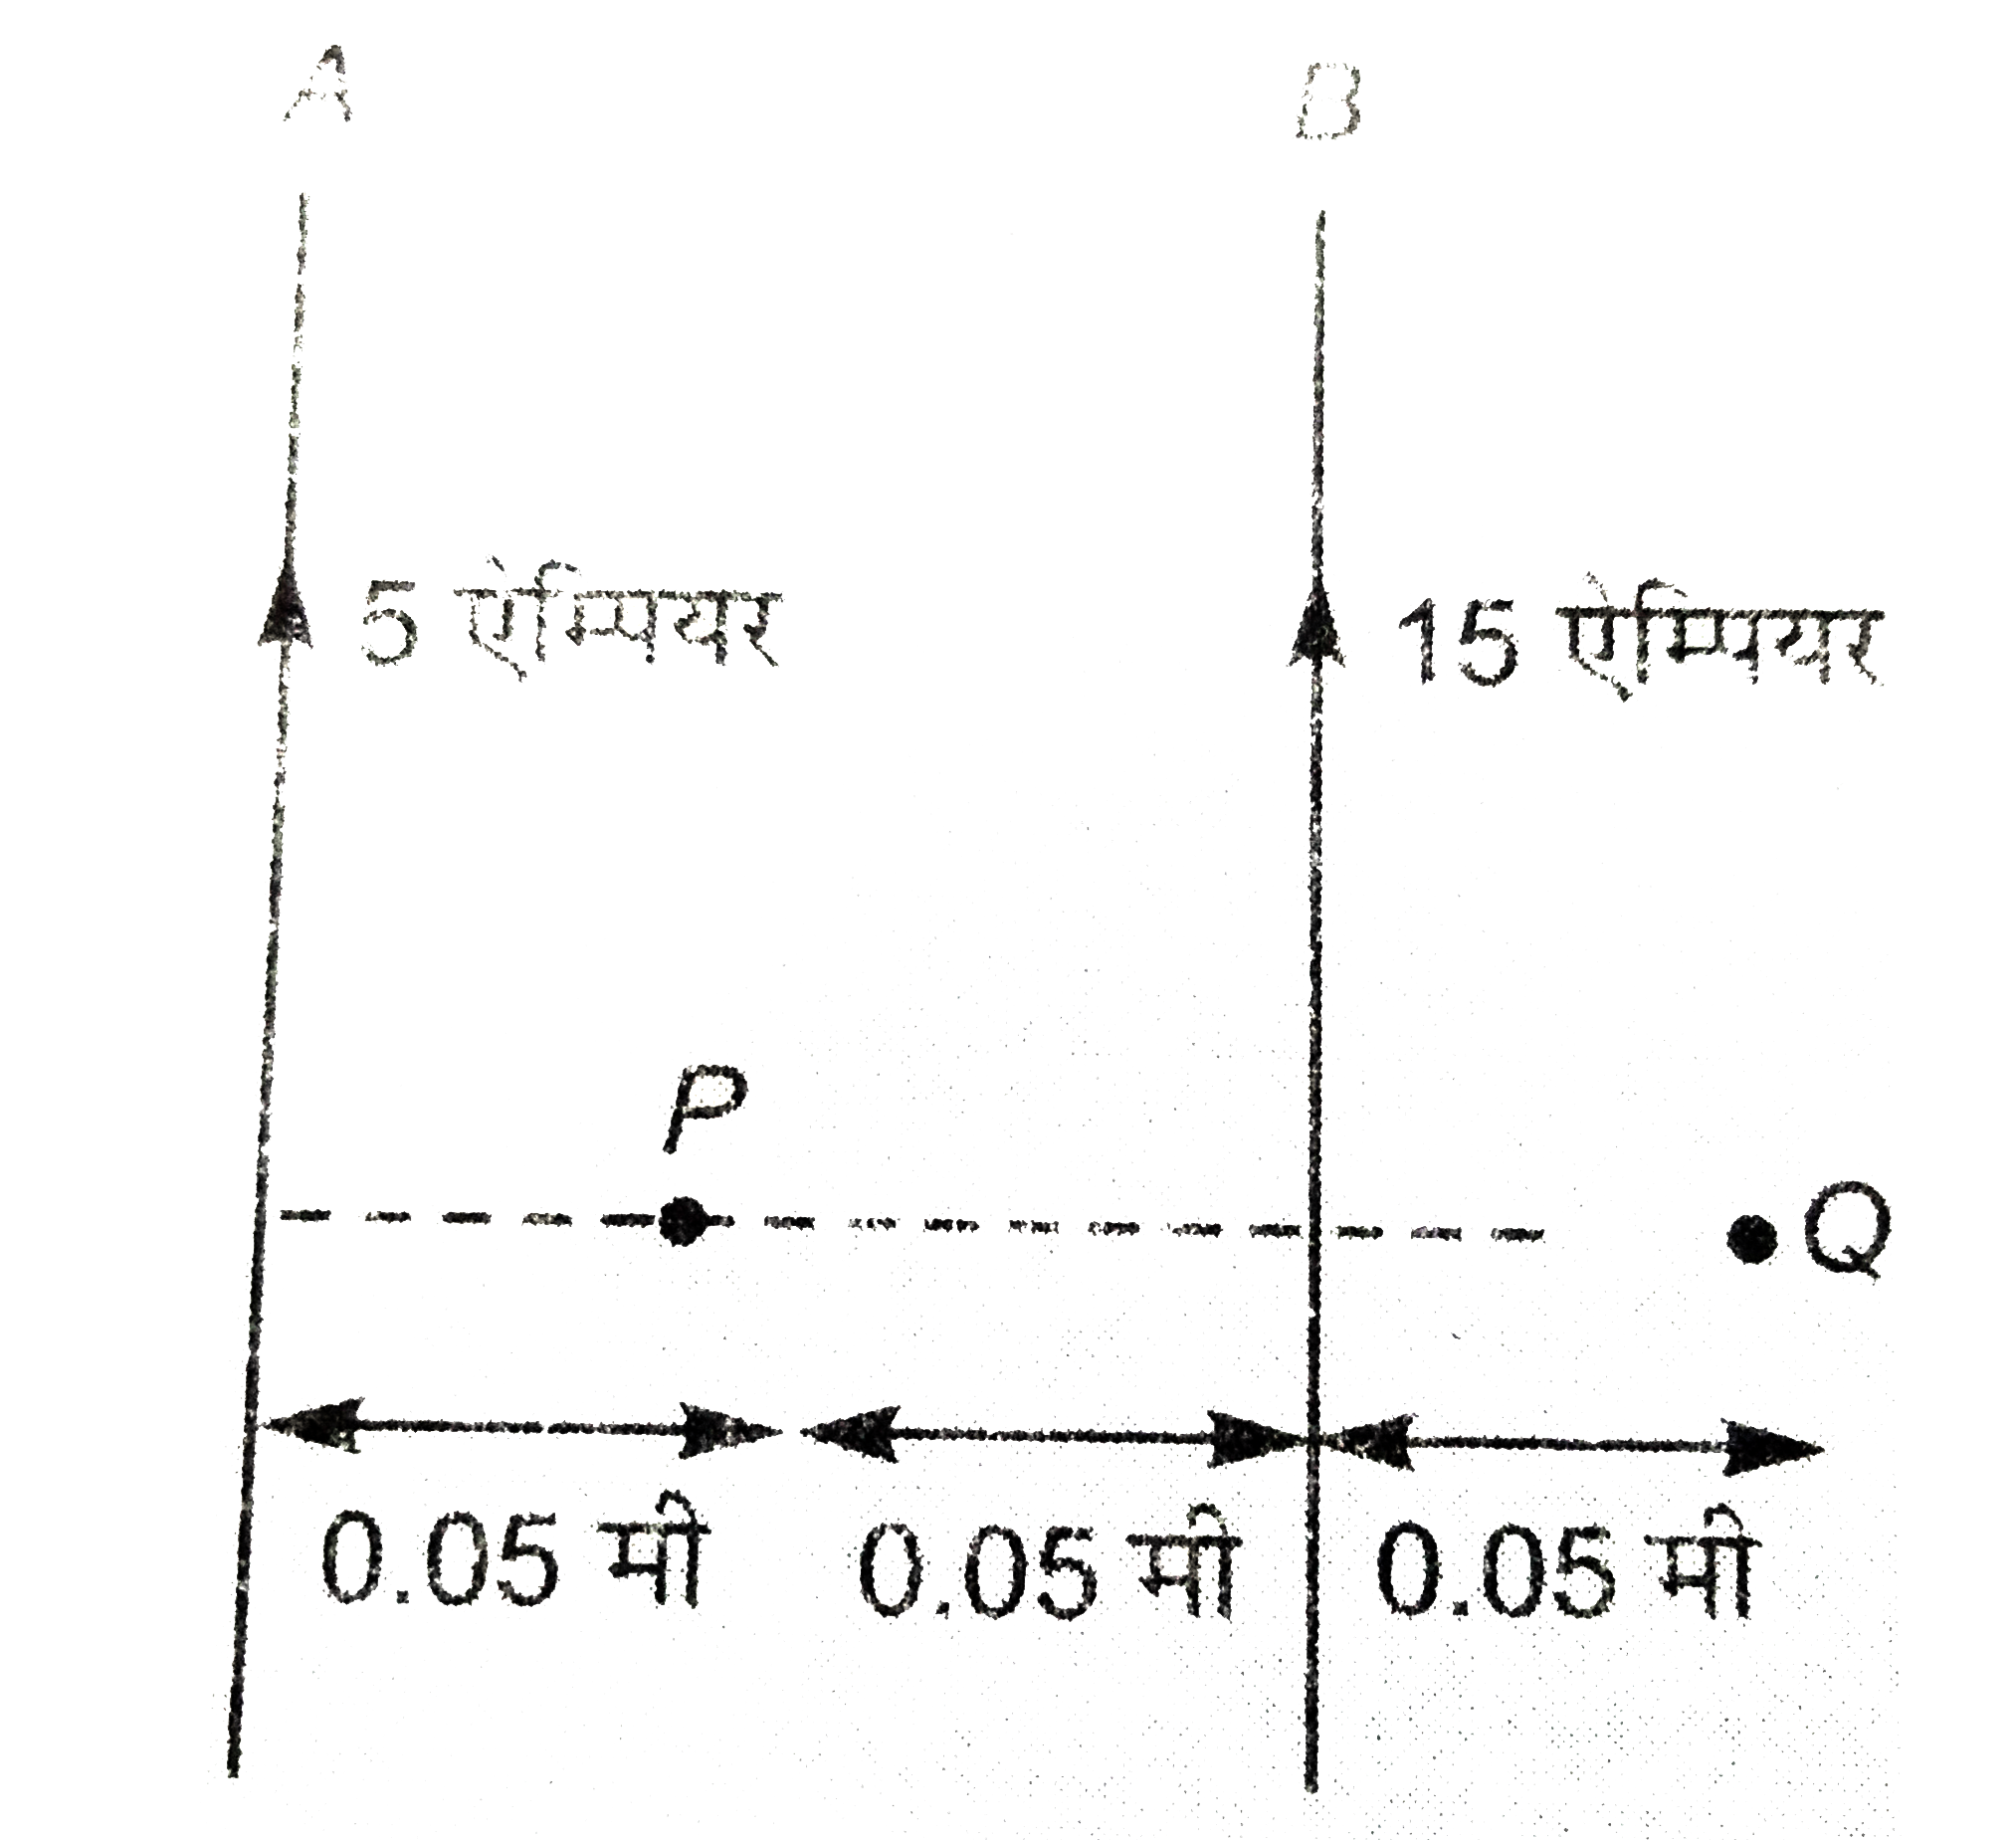 चित्र में दो बहुत बड़े और सीधे समांतर तारों A व B के बीच की दुरी 0.10 मीटर हैं। A  में 5 एम्पेयर की तथा B में 15 एम्पेयर की धारा प्रवाहित हो रही हैं। (i) बिंदुओं P तथा Q पर चुंबकीय क्षेत्र के मान और दिशा की गड़ना कीजिये। (ii) तार A की प्रति मीटर लम्बाई पर लगने वाले बल का परिमाण और दिशा ज्ञात कीजिये।